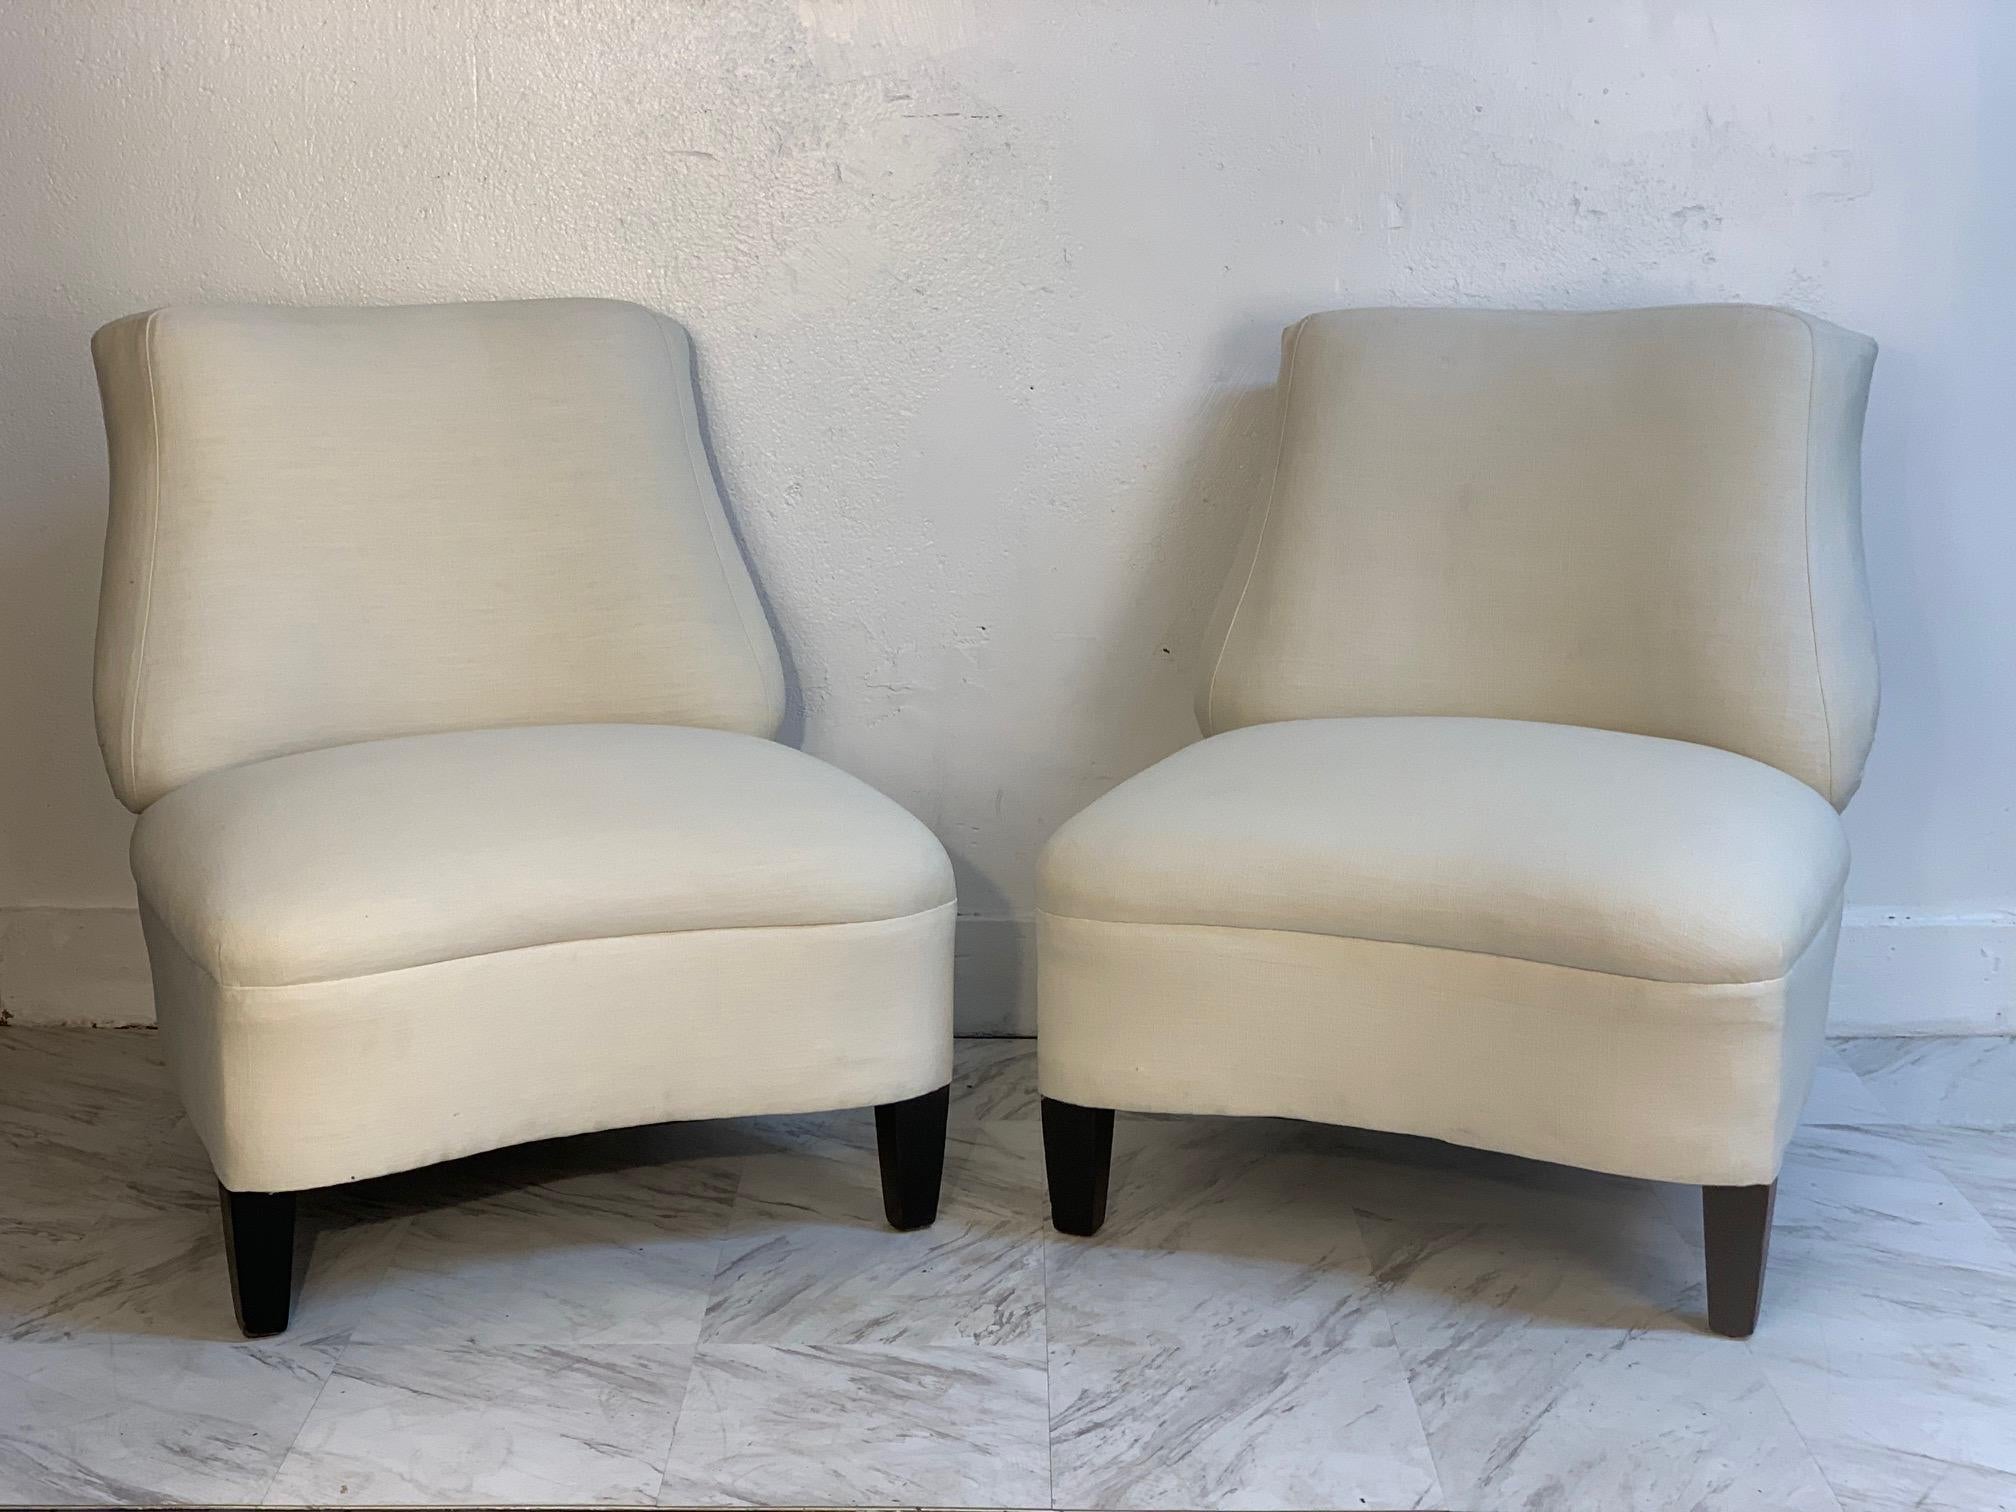 Paire de chaises longues ou pantoufles des années 1950, à la manière de Gilbert Rohde. Revêtement blanc cassé et pieds en bois laqué noir. Le style Dunbar.